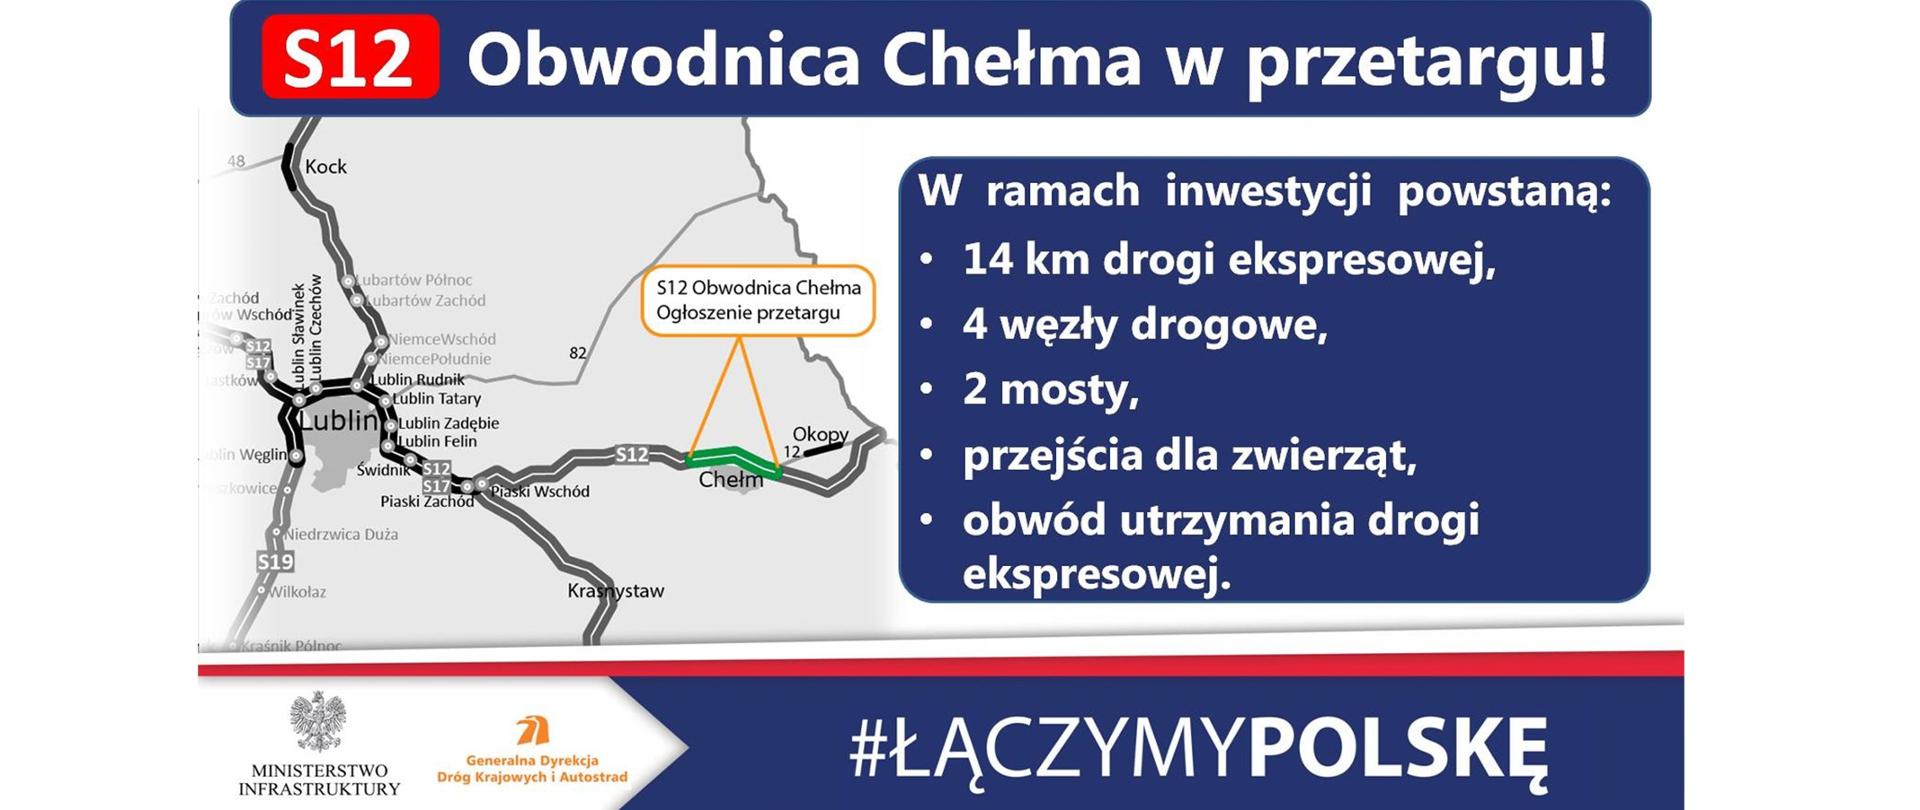 Generalna Dyrekcja Dróg Krajowych i Autostrad rozpoczyna postępowanie przetargowe na wybór wykonawcy obwodnicy Chełma w ciągu drogi ekspresowej S12 - infografika